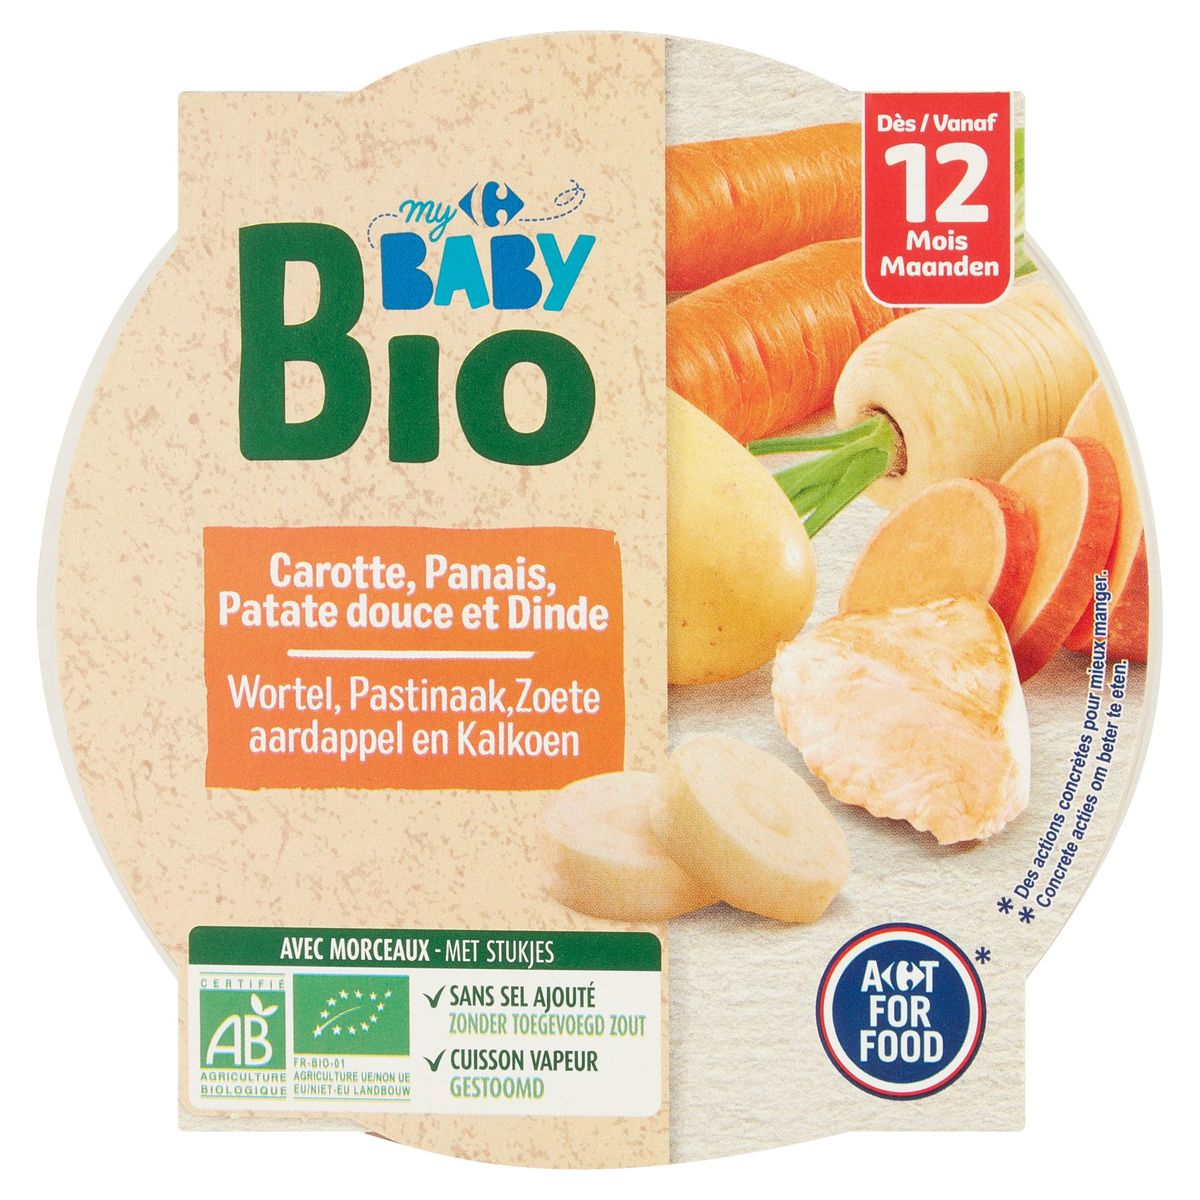 Carrefour Baby Bio Wortel Pastinaak Zoete Aardappel, Kalkoen 12M+ 230g